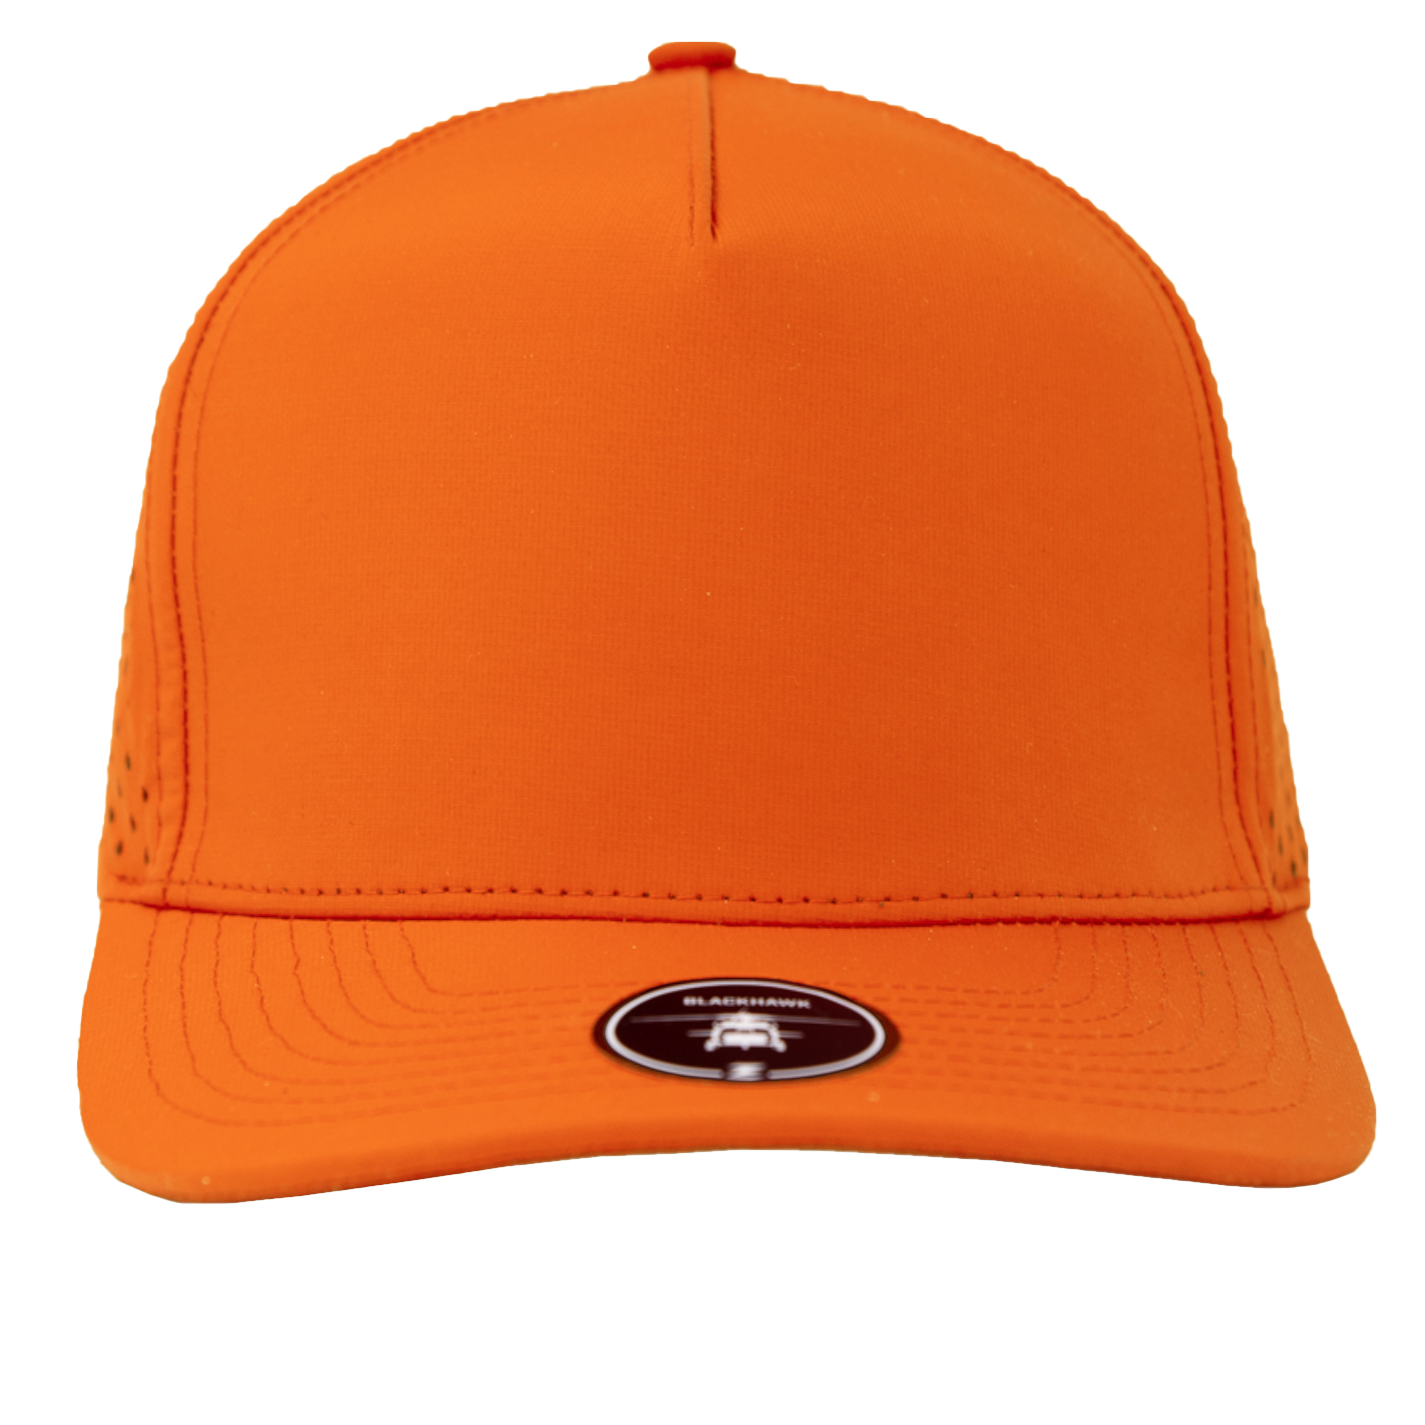 BLACKHAWK-Water Repellent hat-Zapped Headwear-blaze-orange-Zapped Headwear